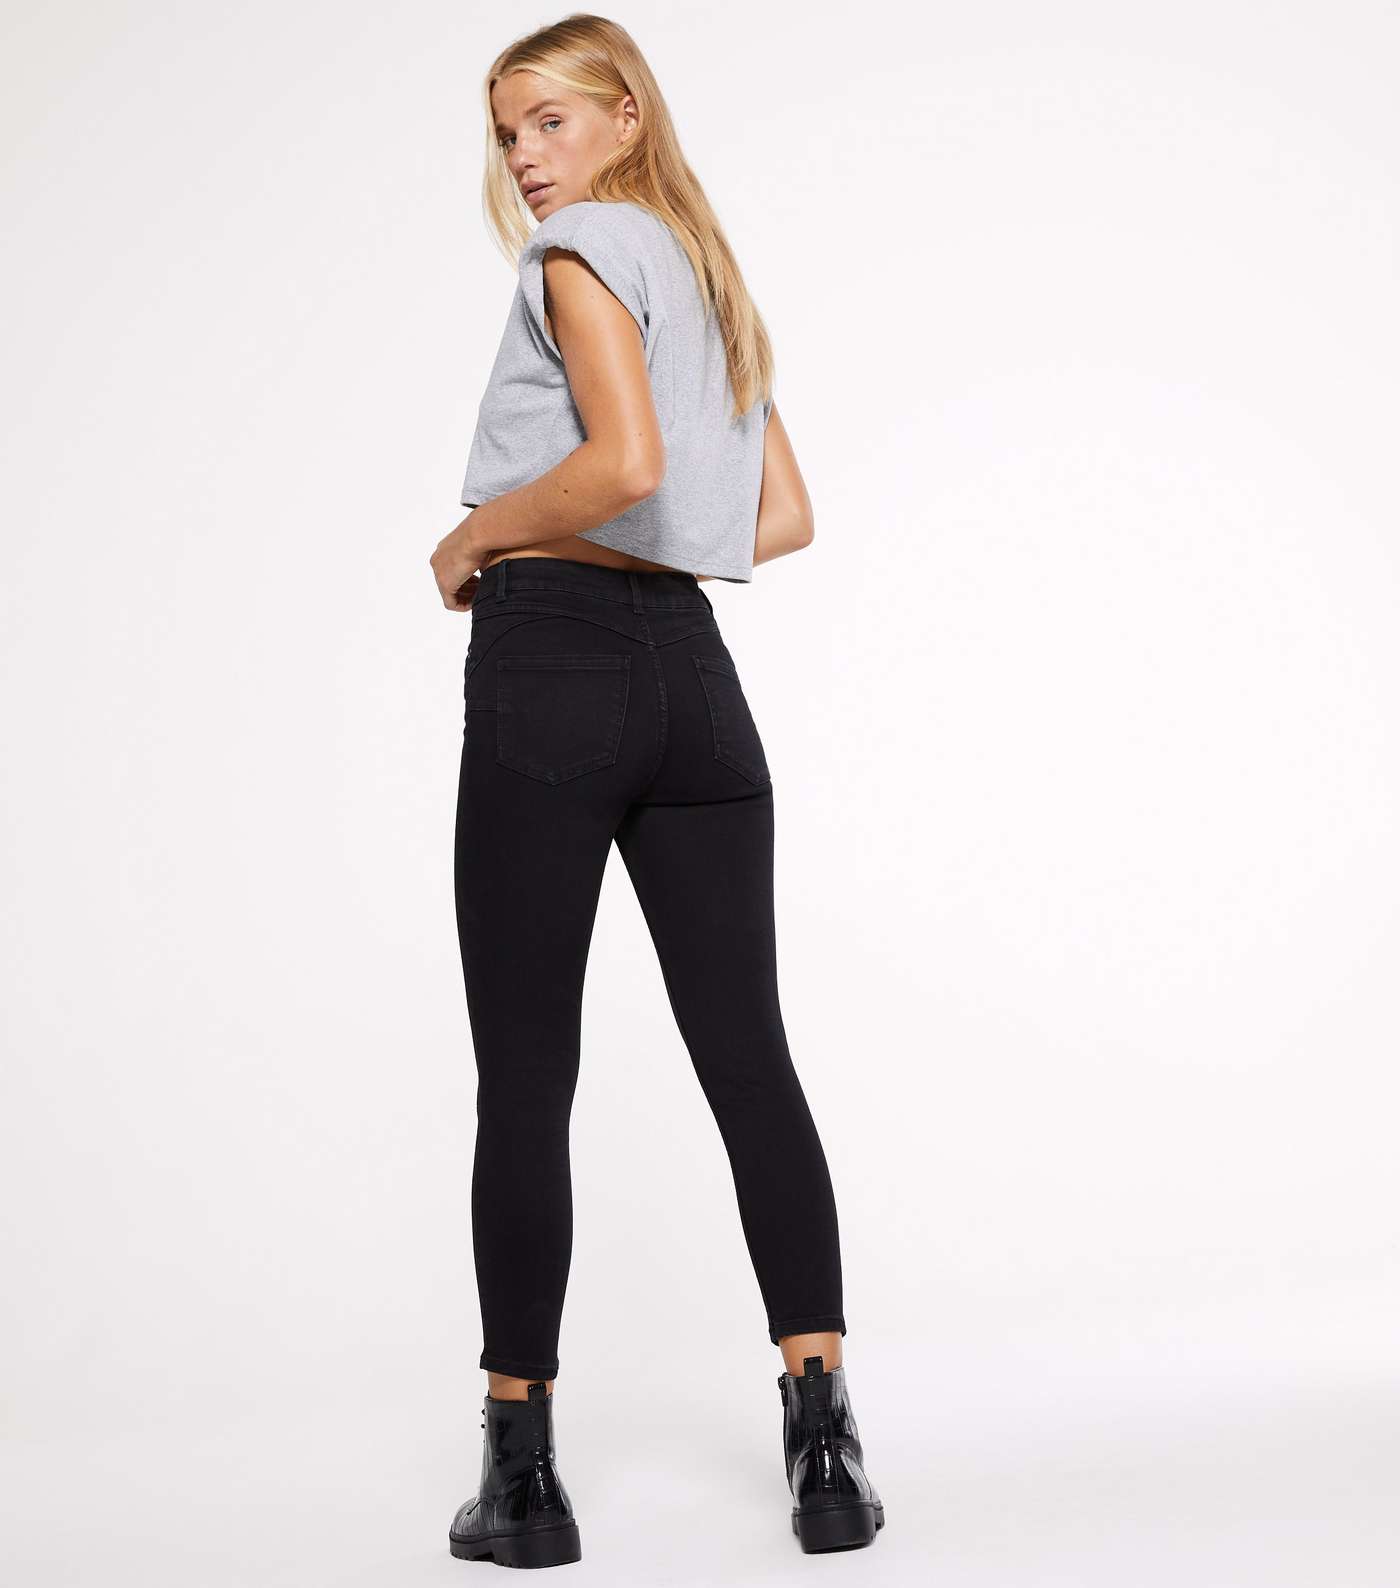 Petite Short Leg Black 'Lift & Shape' Jenna Skinny Jeans Image 2